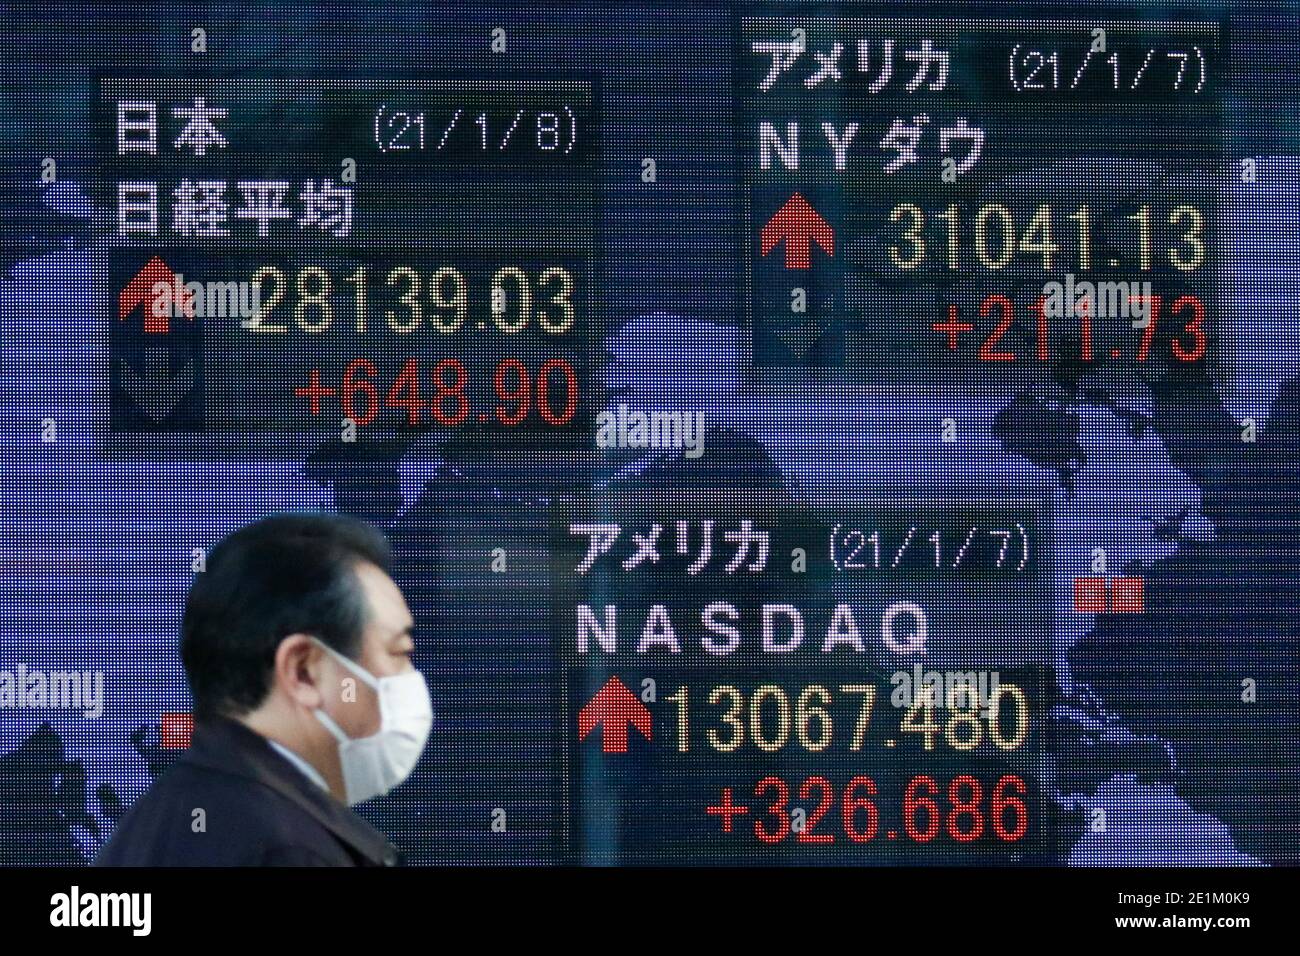 08 de enero de 2021, Tokio, Japón - un hombre que lleva una máscara de cara pasa por un tablero de valores electrónico mostrando el Nikkei Stock Average de Japón, que aumentó 648.90 puntos o 2.36 por ciento para cerrar a 28,139.03. El índice japonés Nikkei subió un 2.36% para alcanzar un nuevo máximo de 5 años. Crédito: Rodrigo Reyes Marín/Alamy Live News Foto de stock